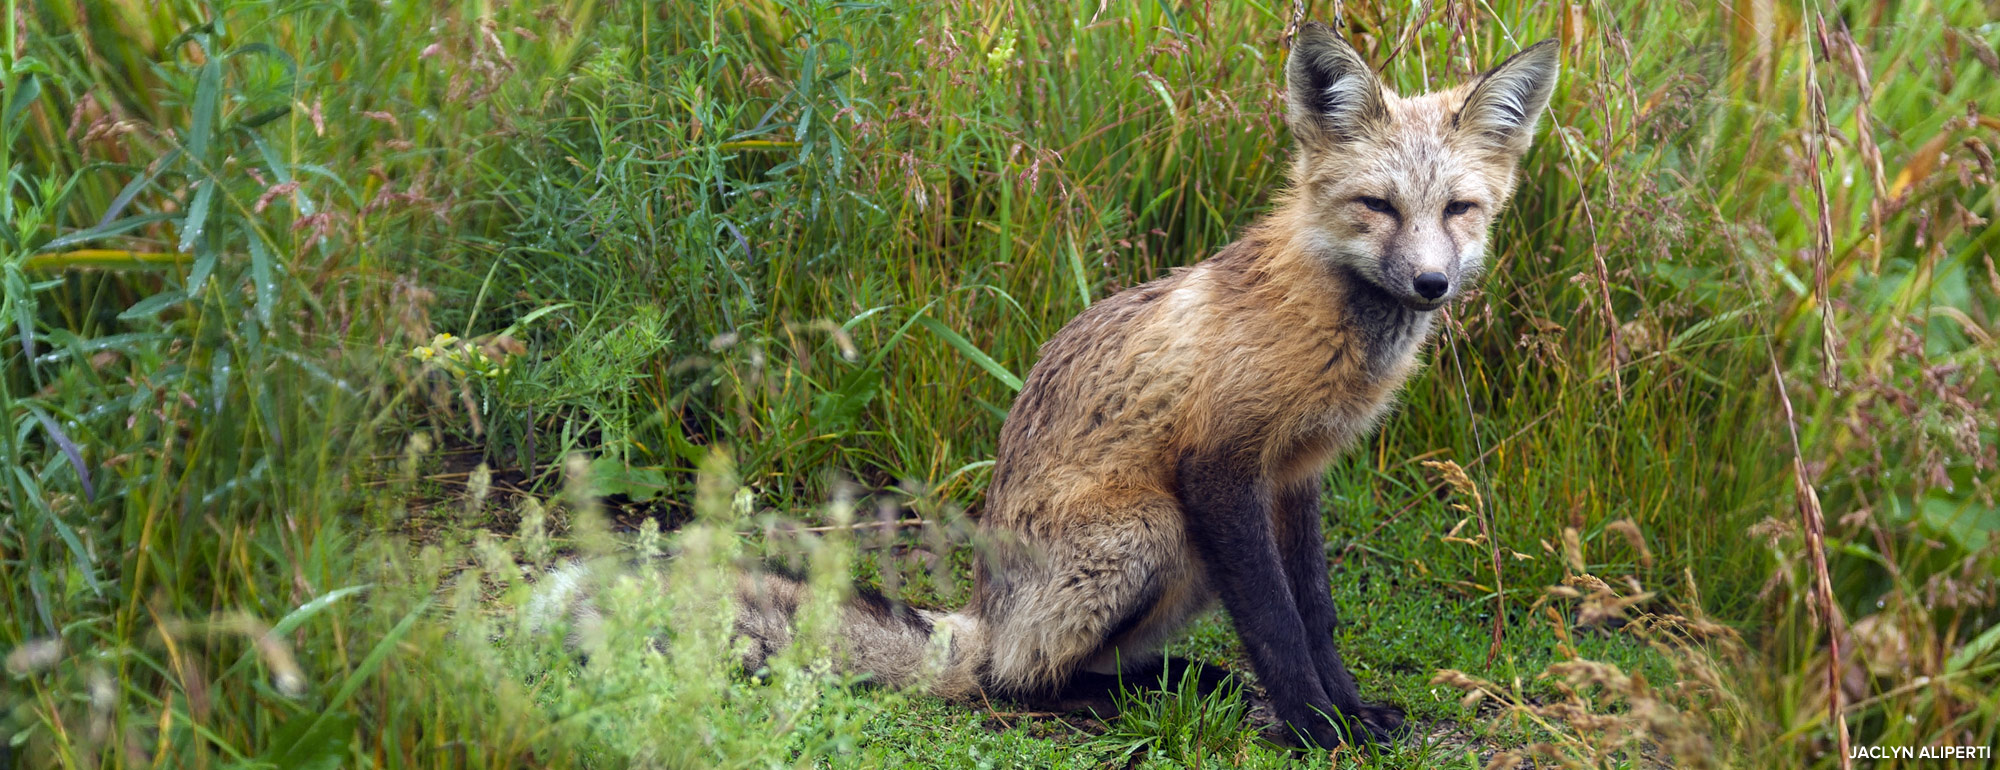 Red fox photo by Jaclyn Aliperti